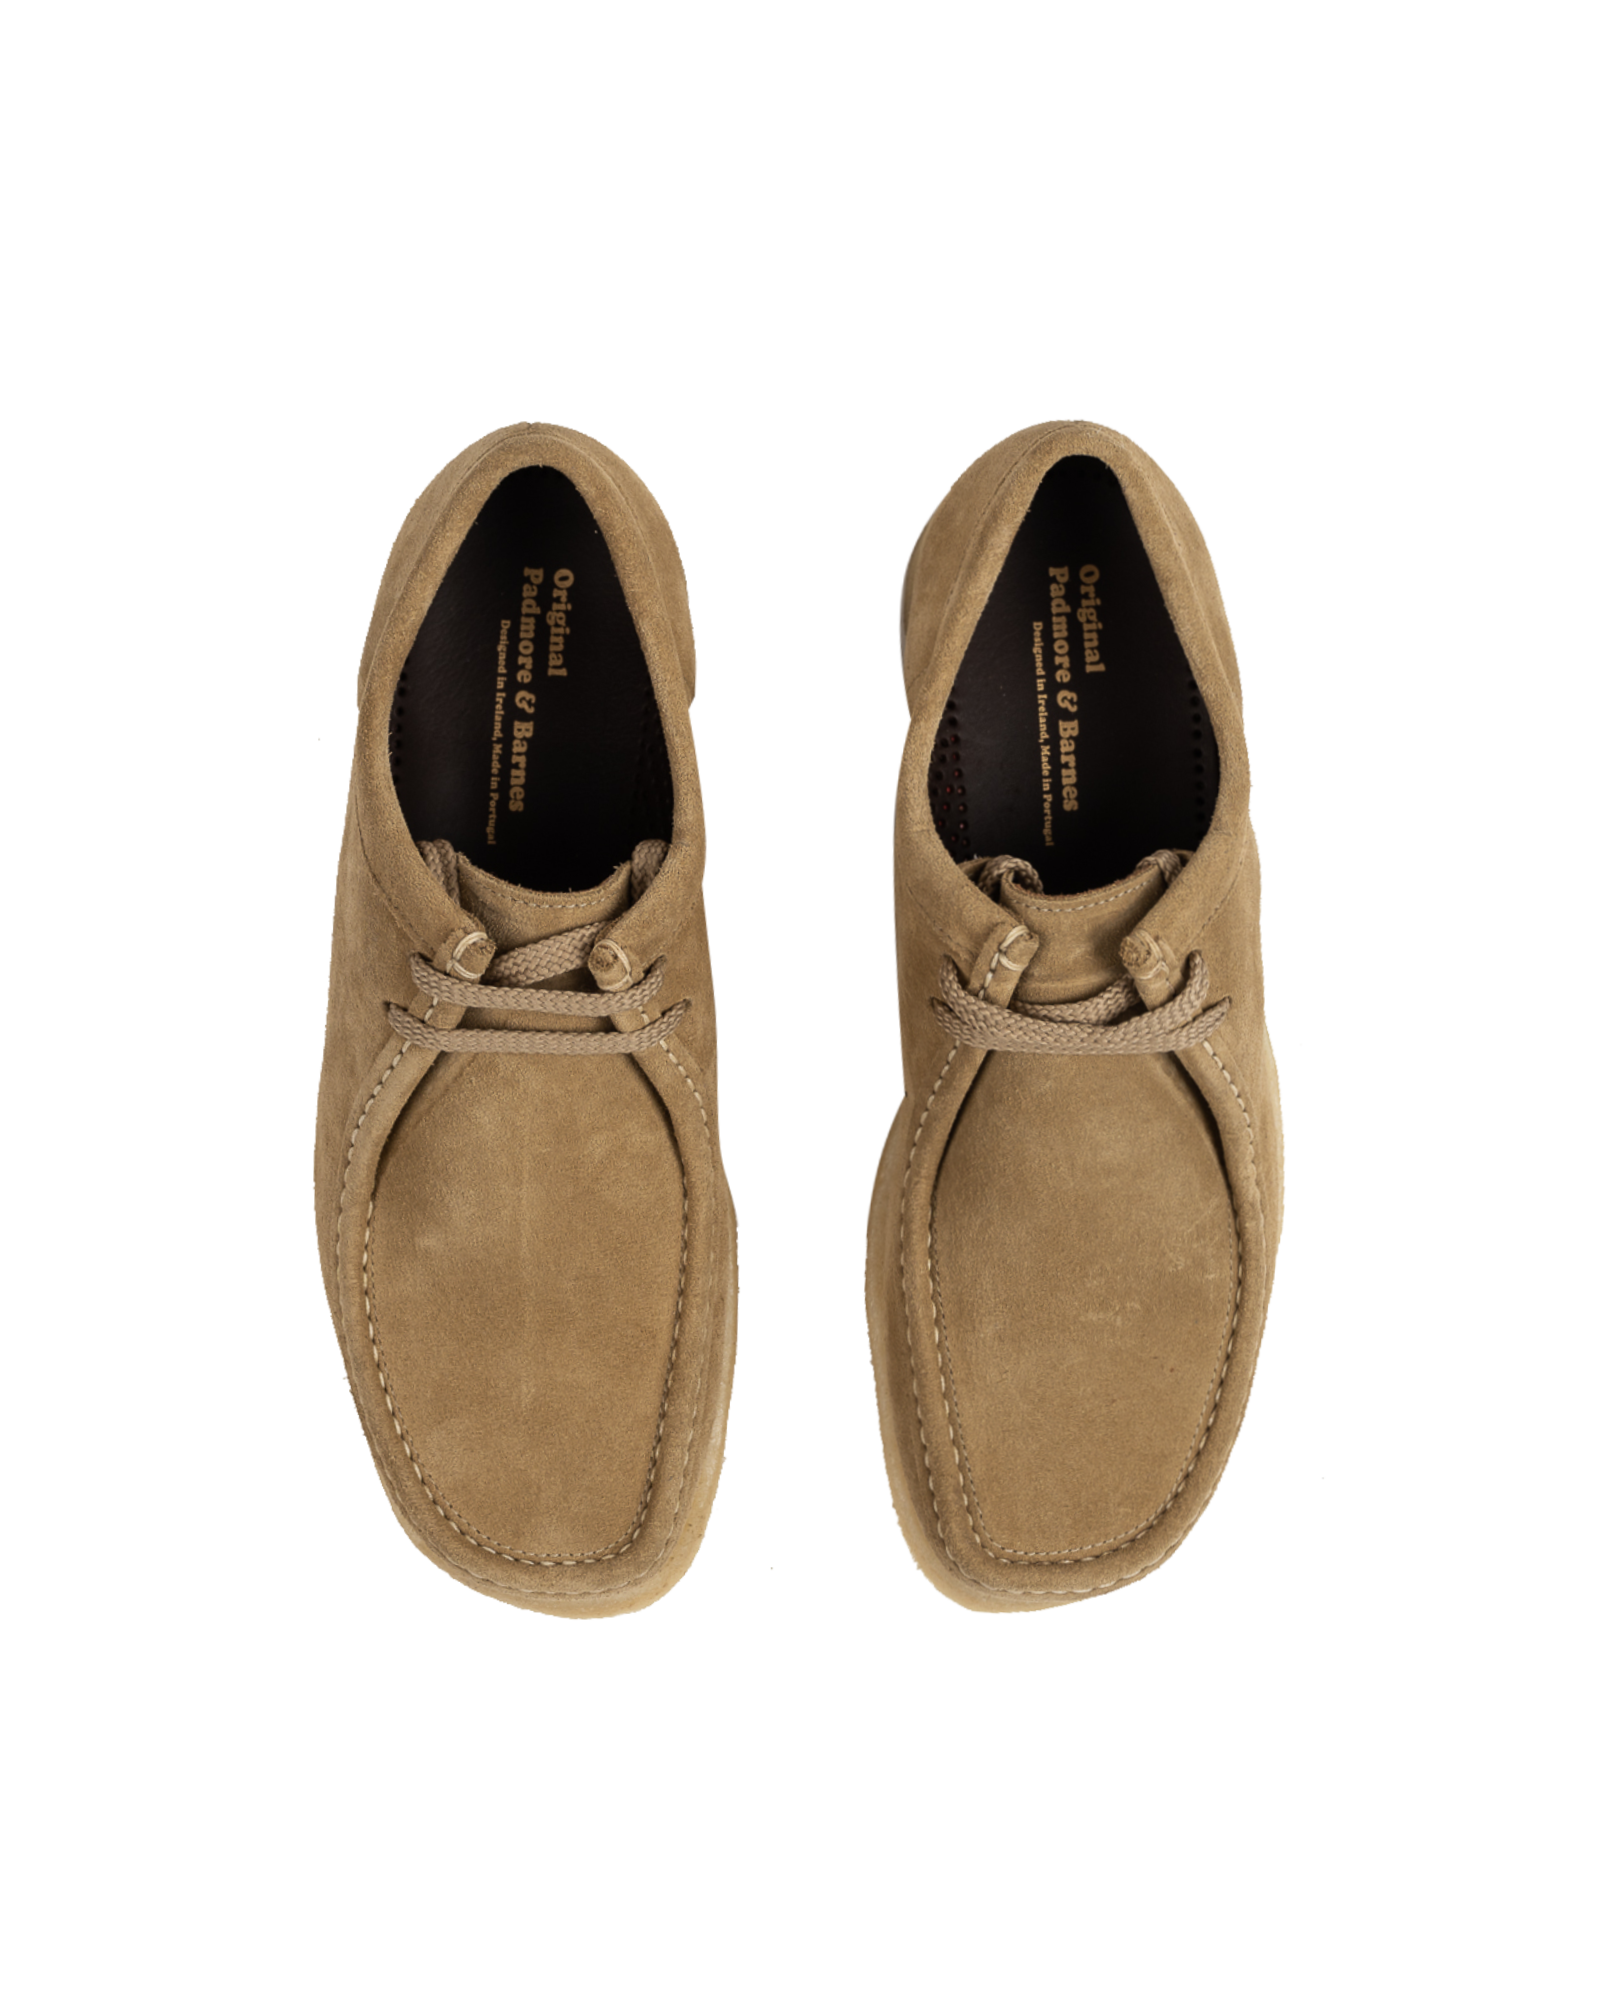 Padmore & Barnes - Footwear - P204 - Terra Suede